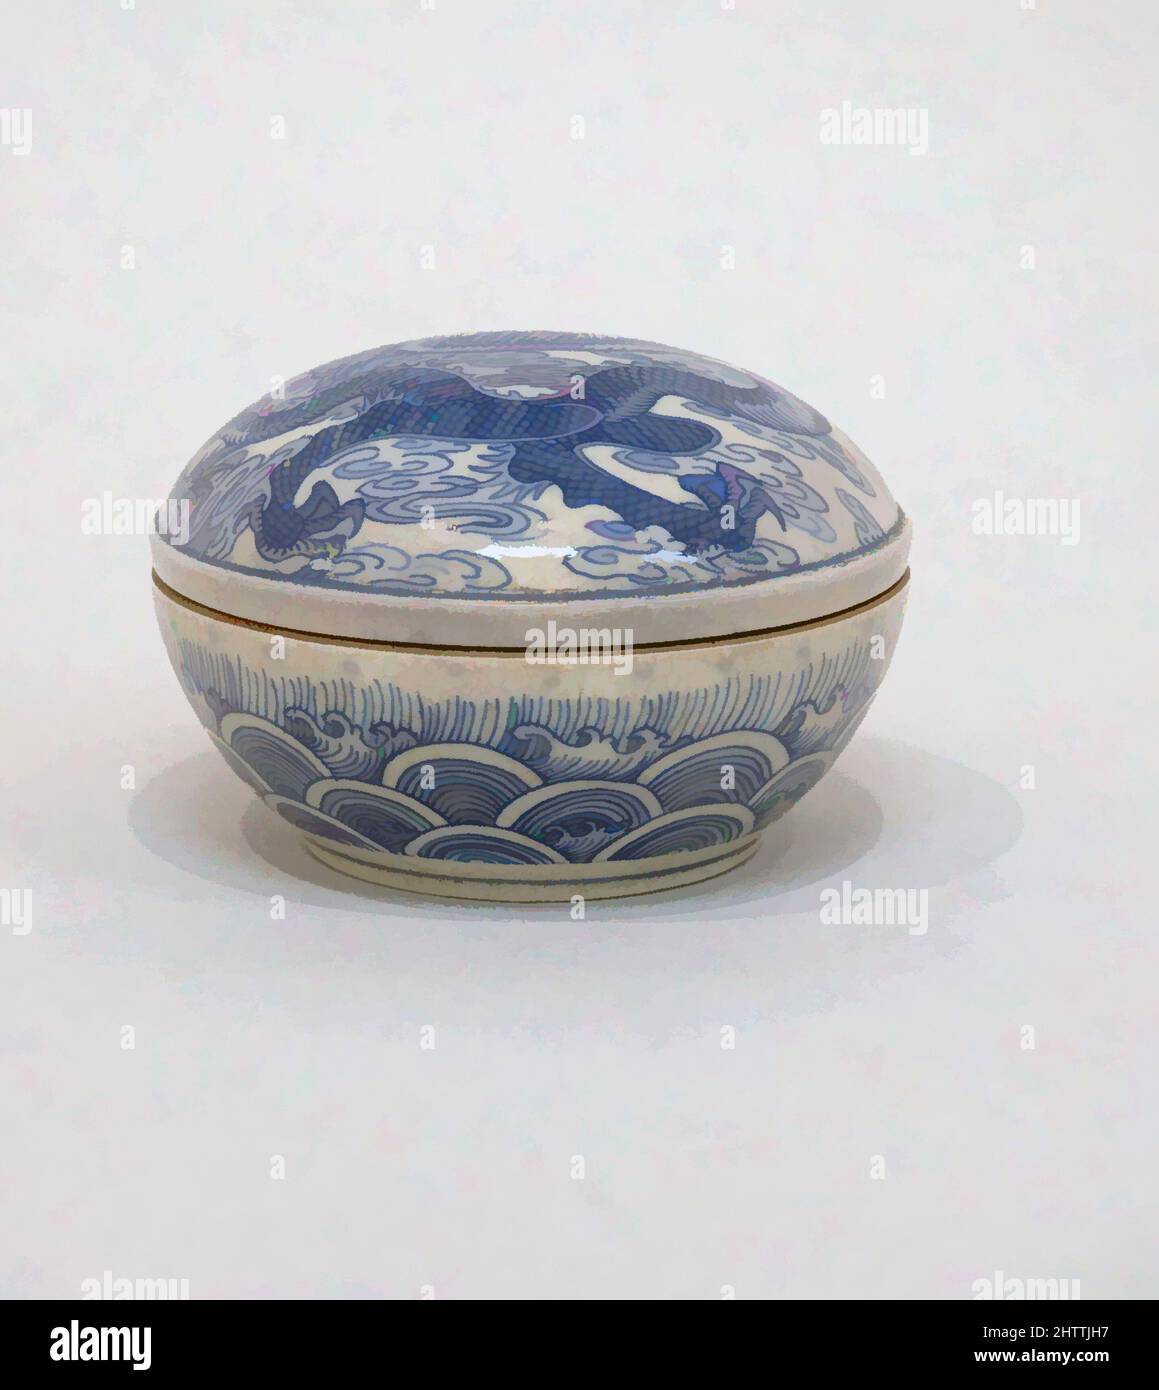 Arte ispirata a Rouge Box, dinastia Qing (1644-1911), periodo Kangxi (1662-1722), Cina, porcellana, Pasta morbida ricoperta da una rete di grilli grandi, H. 2" (5,1 cm); W. 3 1/4" (8,3 cm); diametro del cerchio: 3 1/4" (8,3 cm); diam. Di piede: 2 poll. (5,1 cm), Ceramica, opere classiche modernizzate da Artotop con un tuffo di modernità. Forme, colore e valore, impatto visivo accattivante sulle emozioni artistiche attraverso la libertà delle opere d'arte in modo contemporaneo. Un messaggio senza tempo che persegue una nuova direzione selvaggiamente creativa. Artisti che si rivolgono al supporto digitale e creano l'NFT Artotop Foto Stock